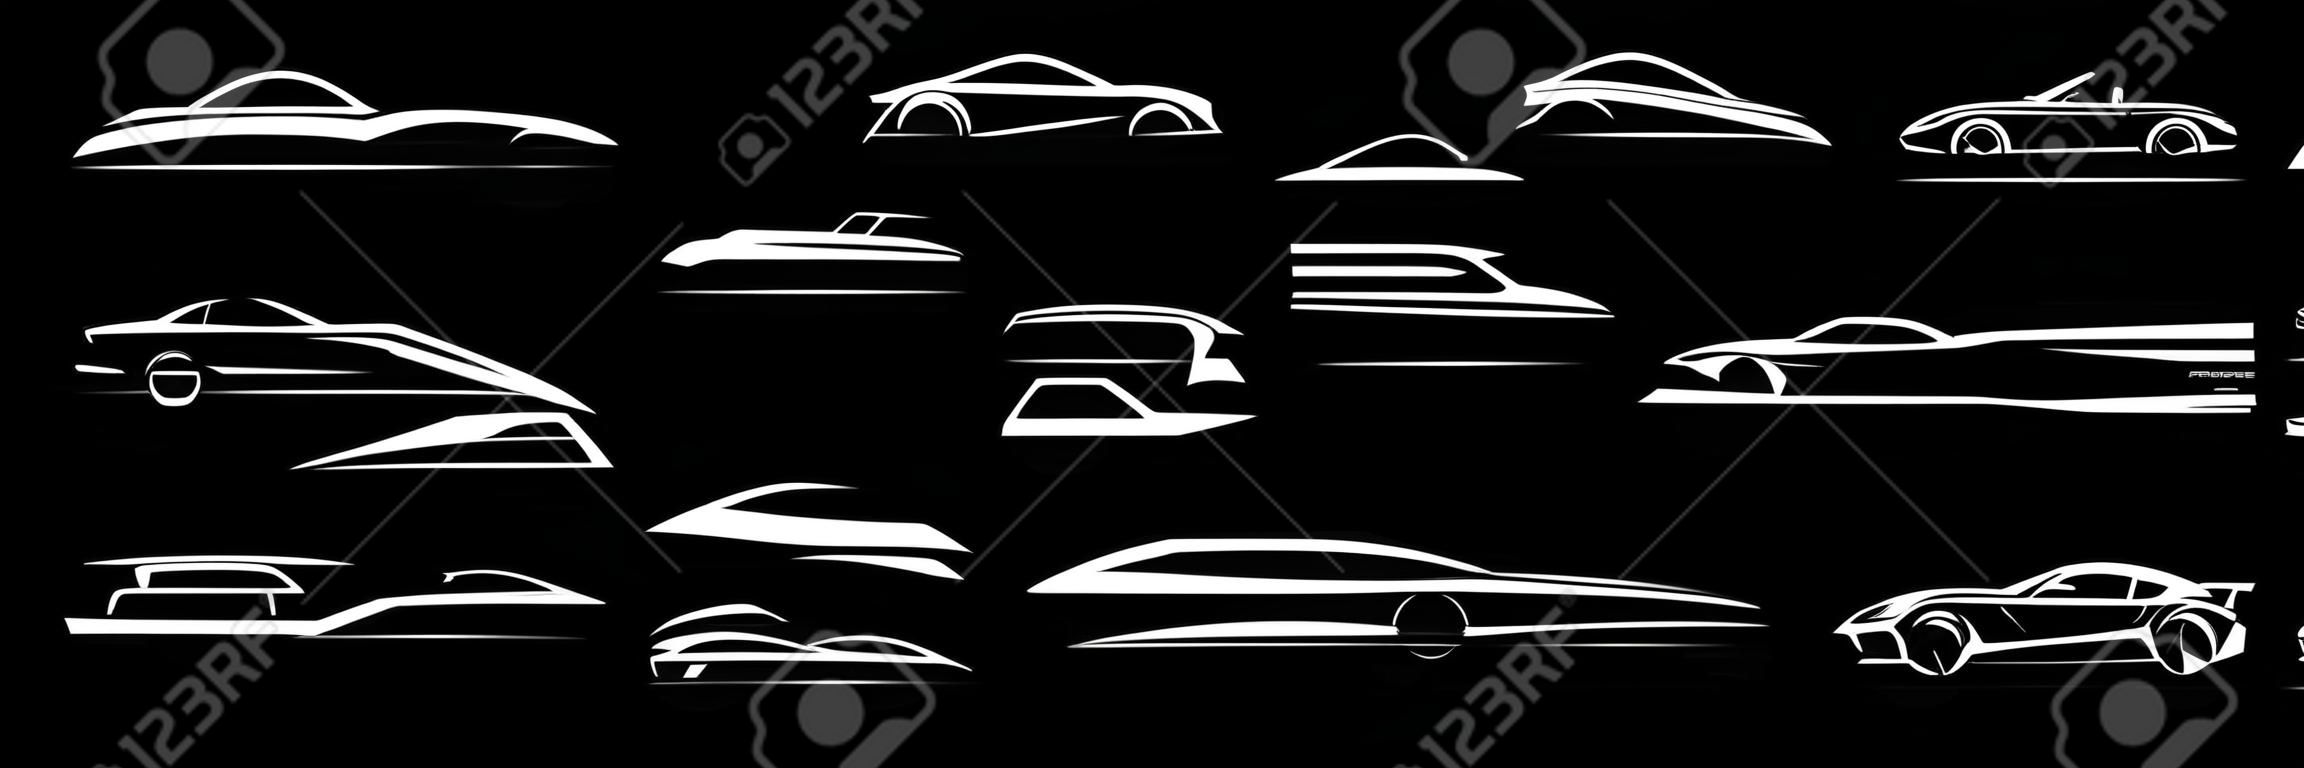 Zestaw ikon logo samochodu sportowego. emblematy sylwetki pojazdu silnikowego. elementy projektu tożsamości marki salonu samochodowego. ilustracje wektorowe.